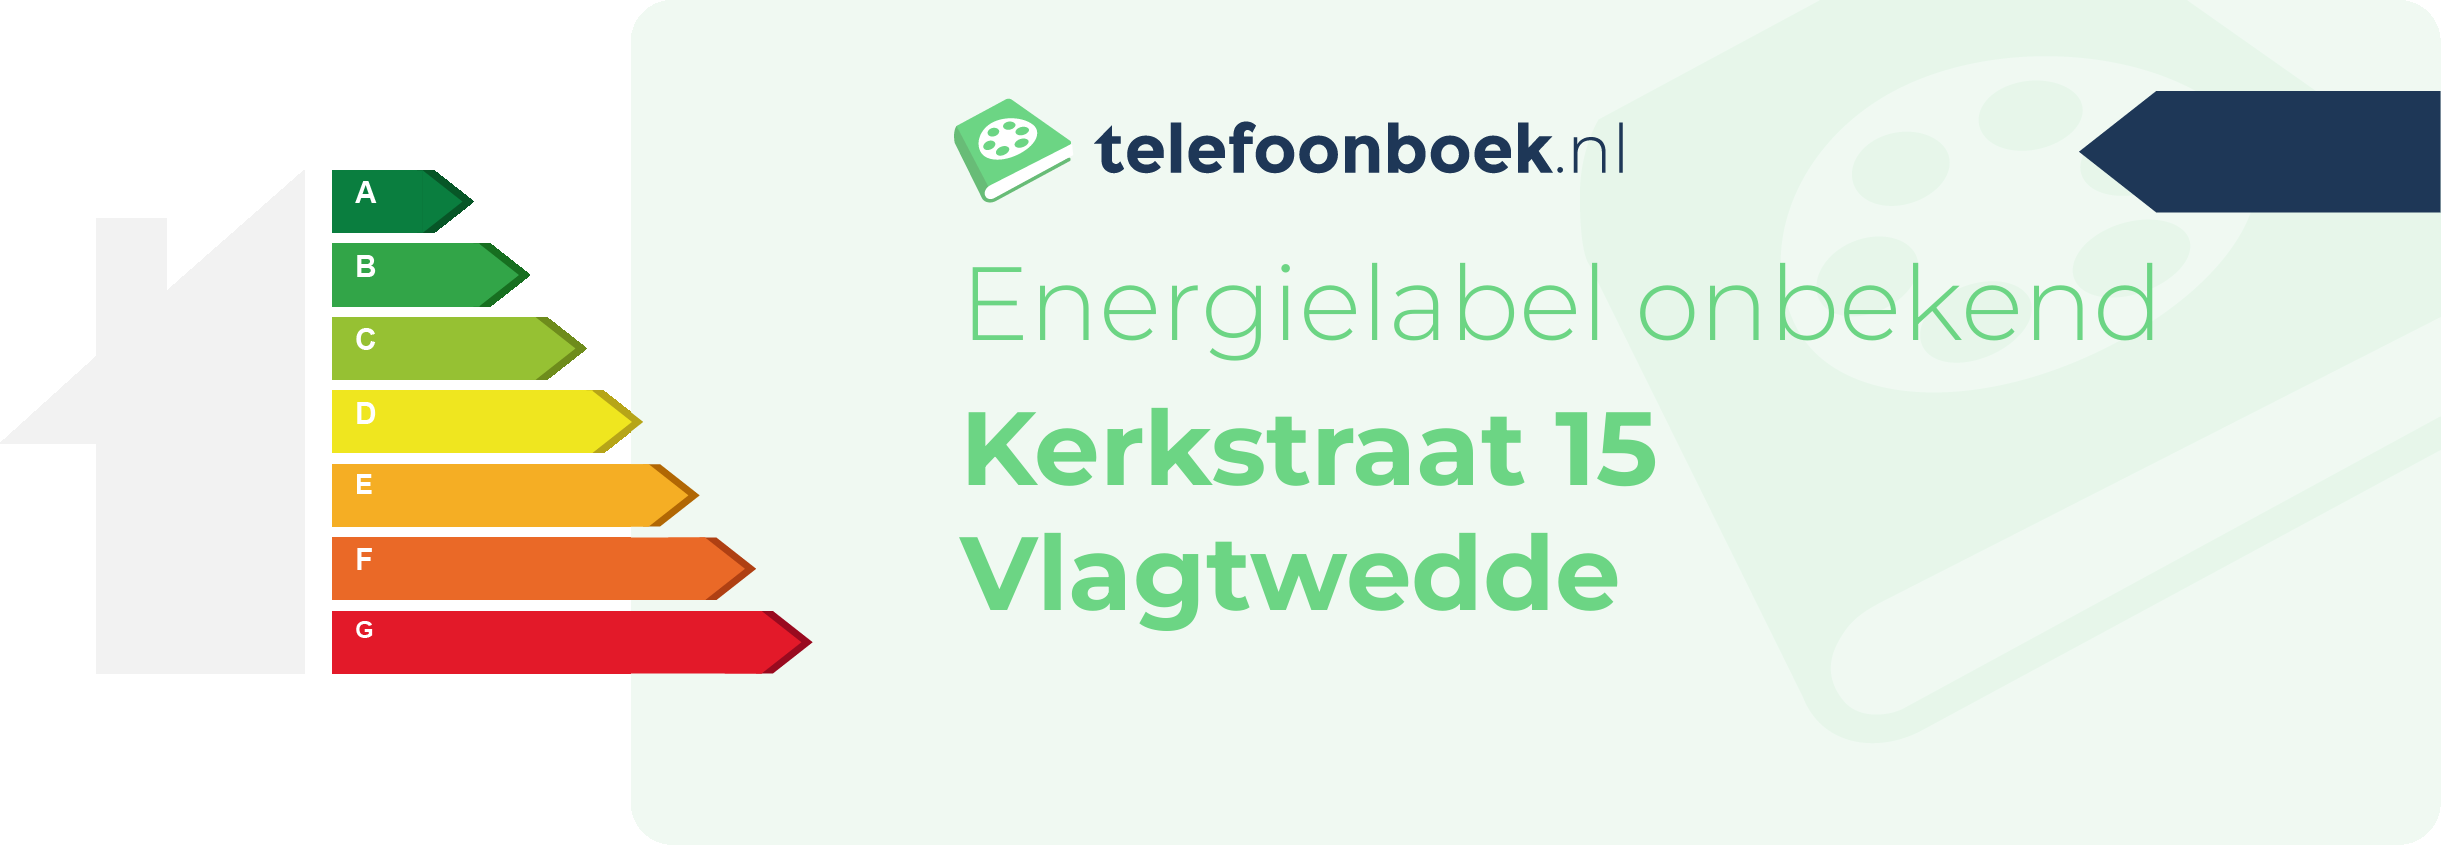 Energielabel Kerkstraat 15 Vlagtwedde